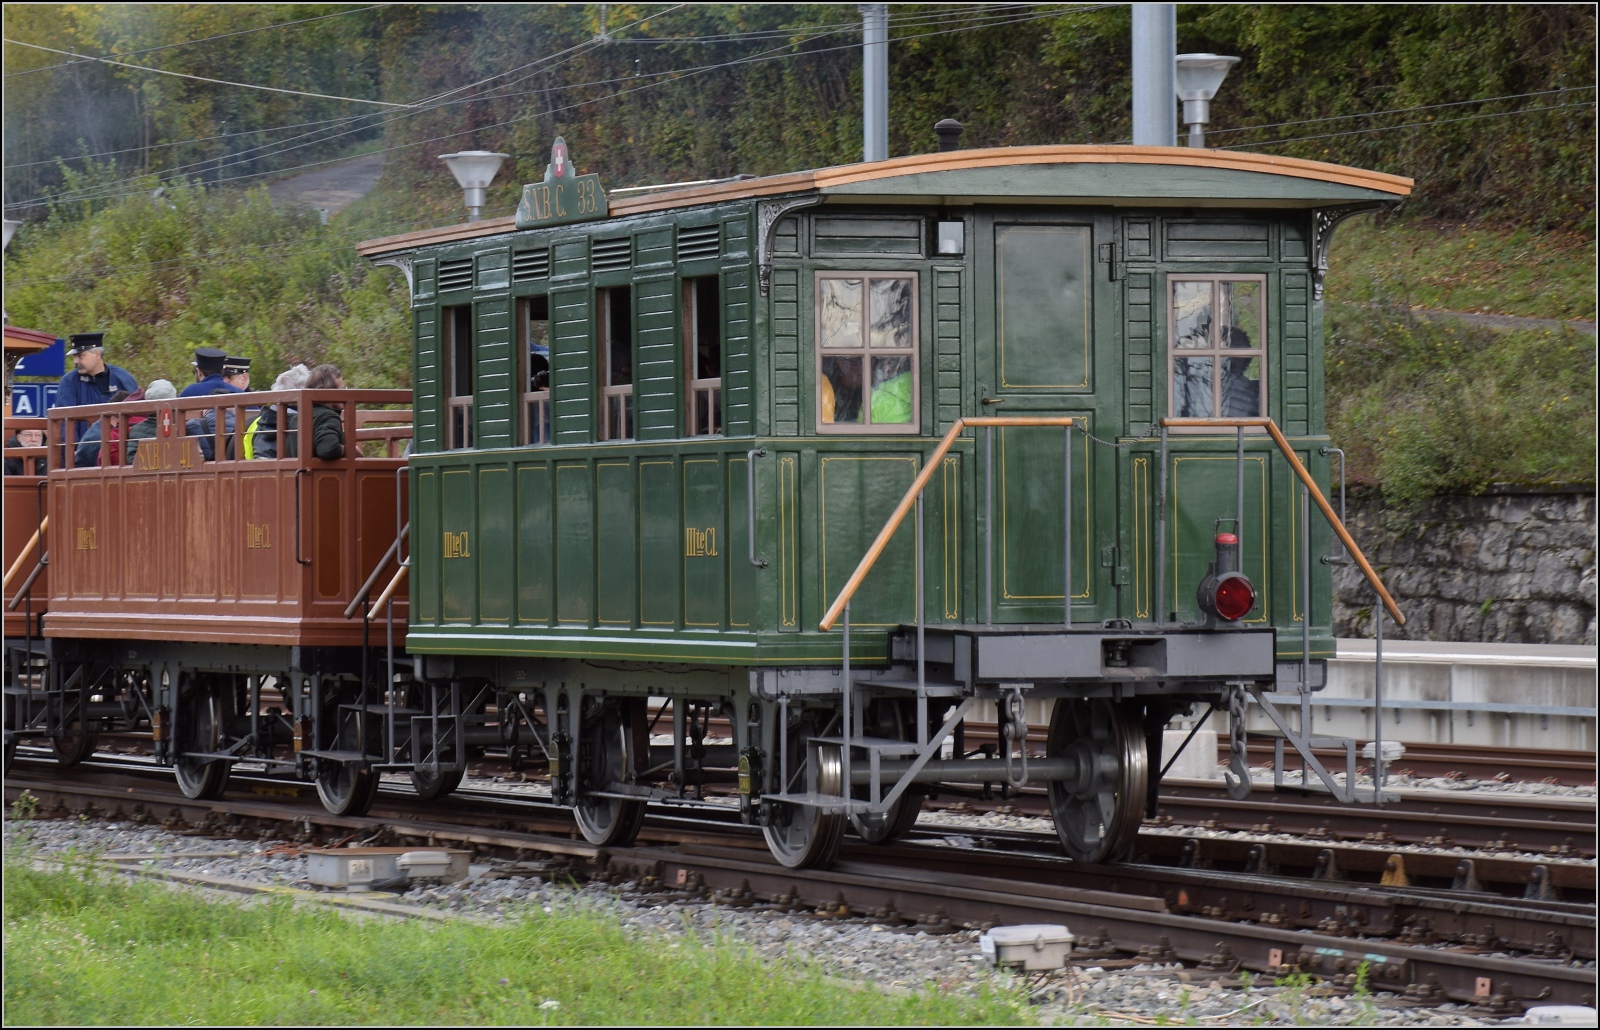 Den Schweizer Bahnen zum 175. Geburtstag.

Dampftage Koblenz, Einfahrt des Zuges in den Bahnhof Koblenz. Oktober 2022.